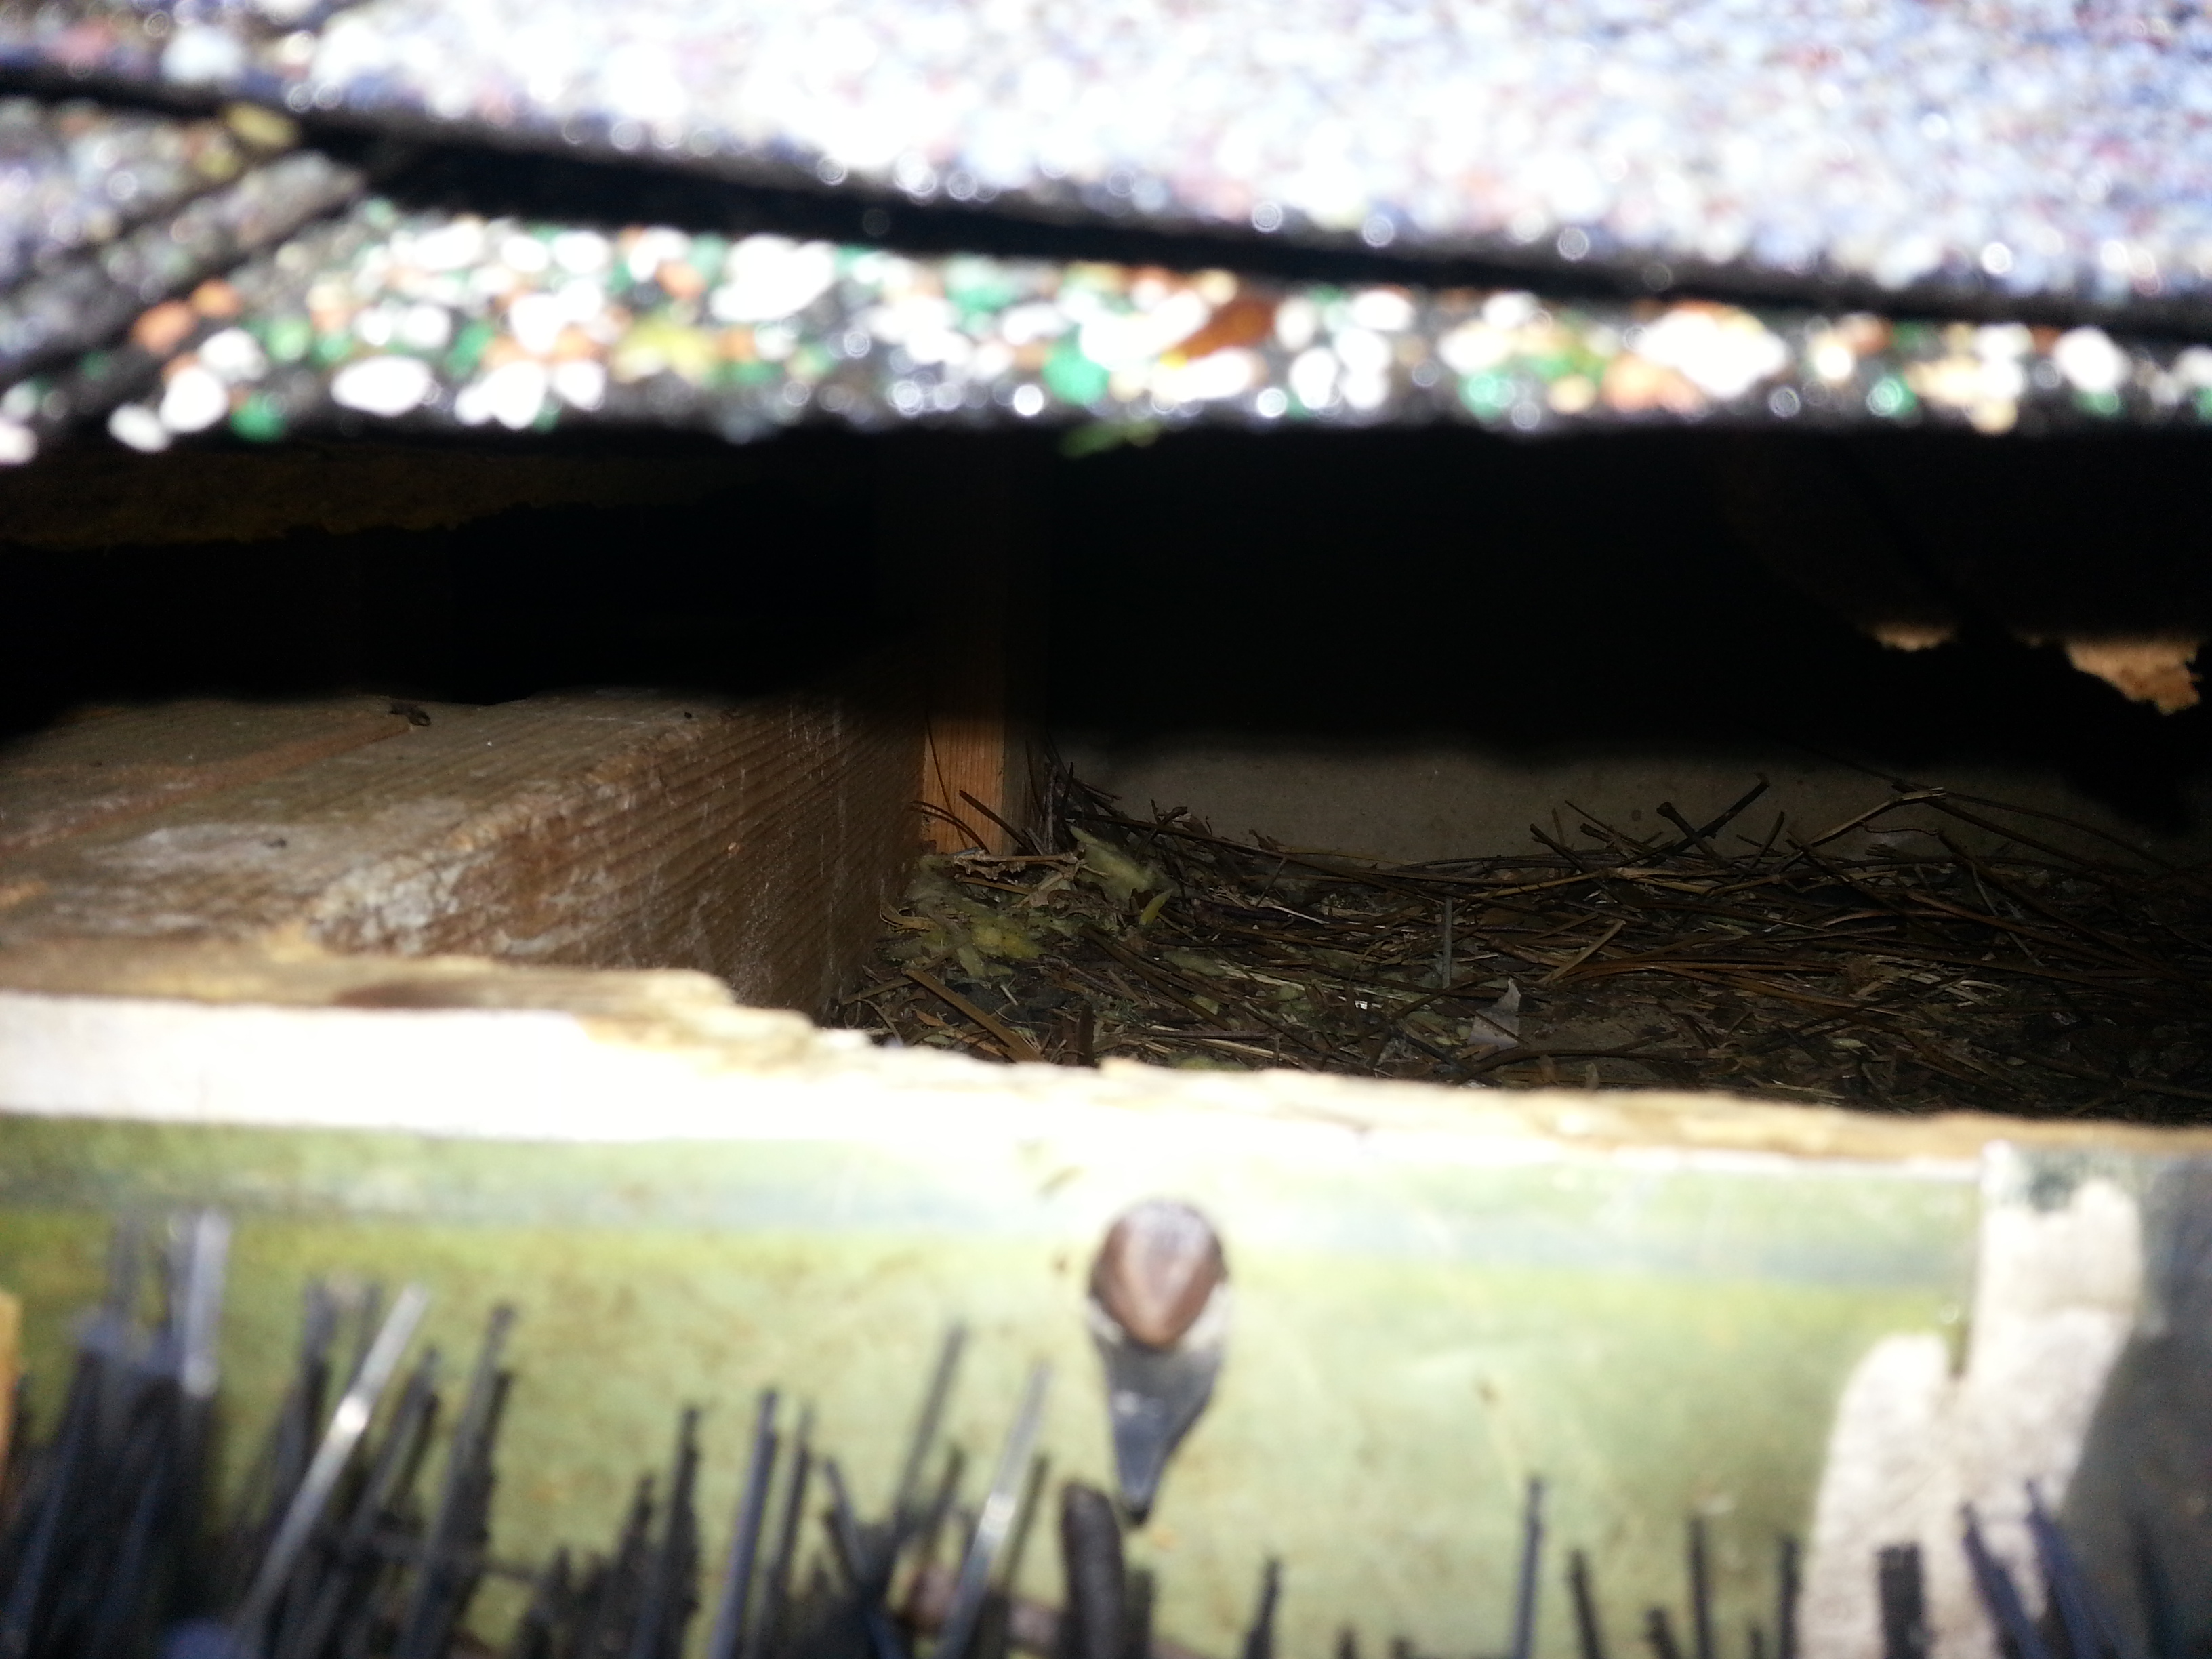 Squirrels nesting in attic Monroe NC